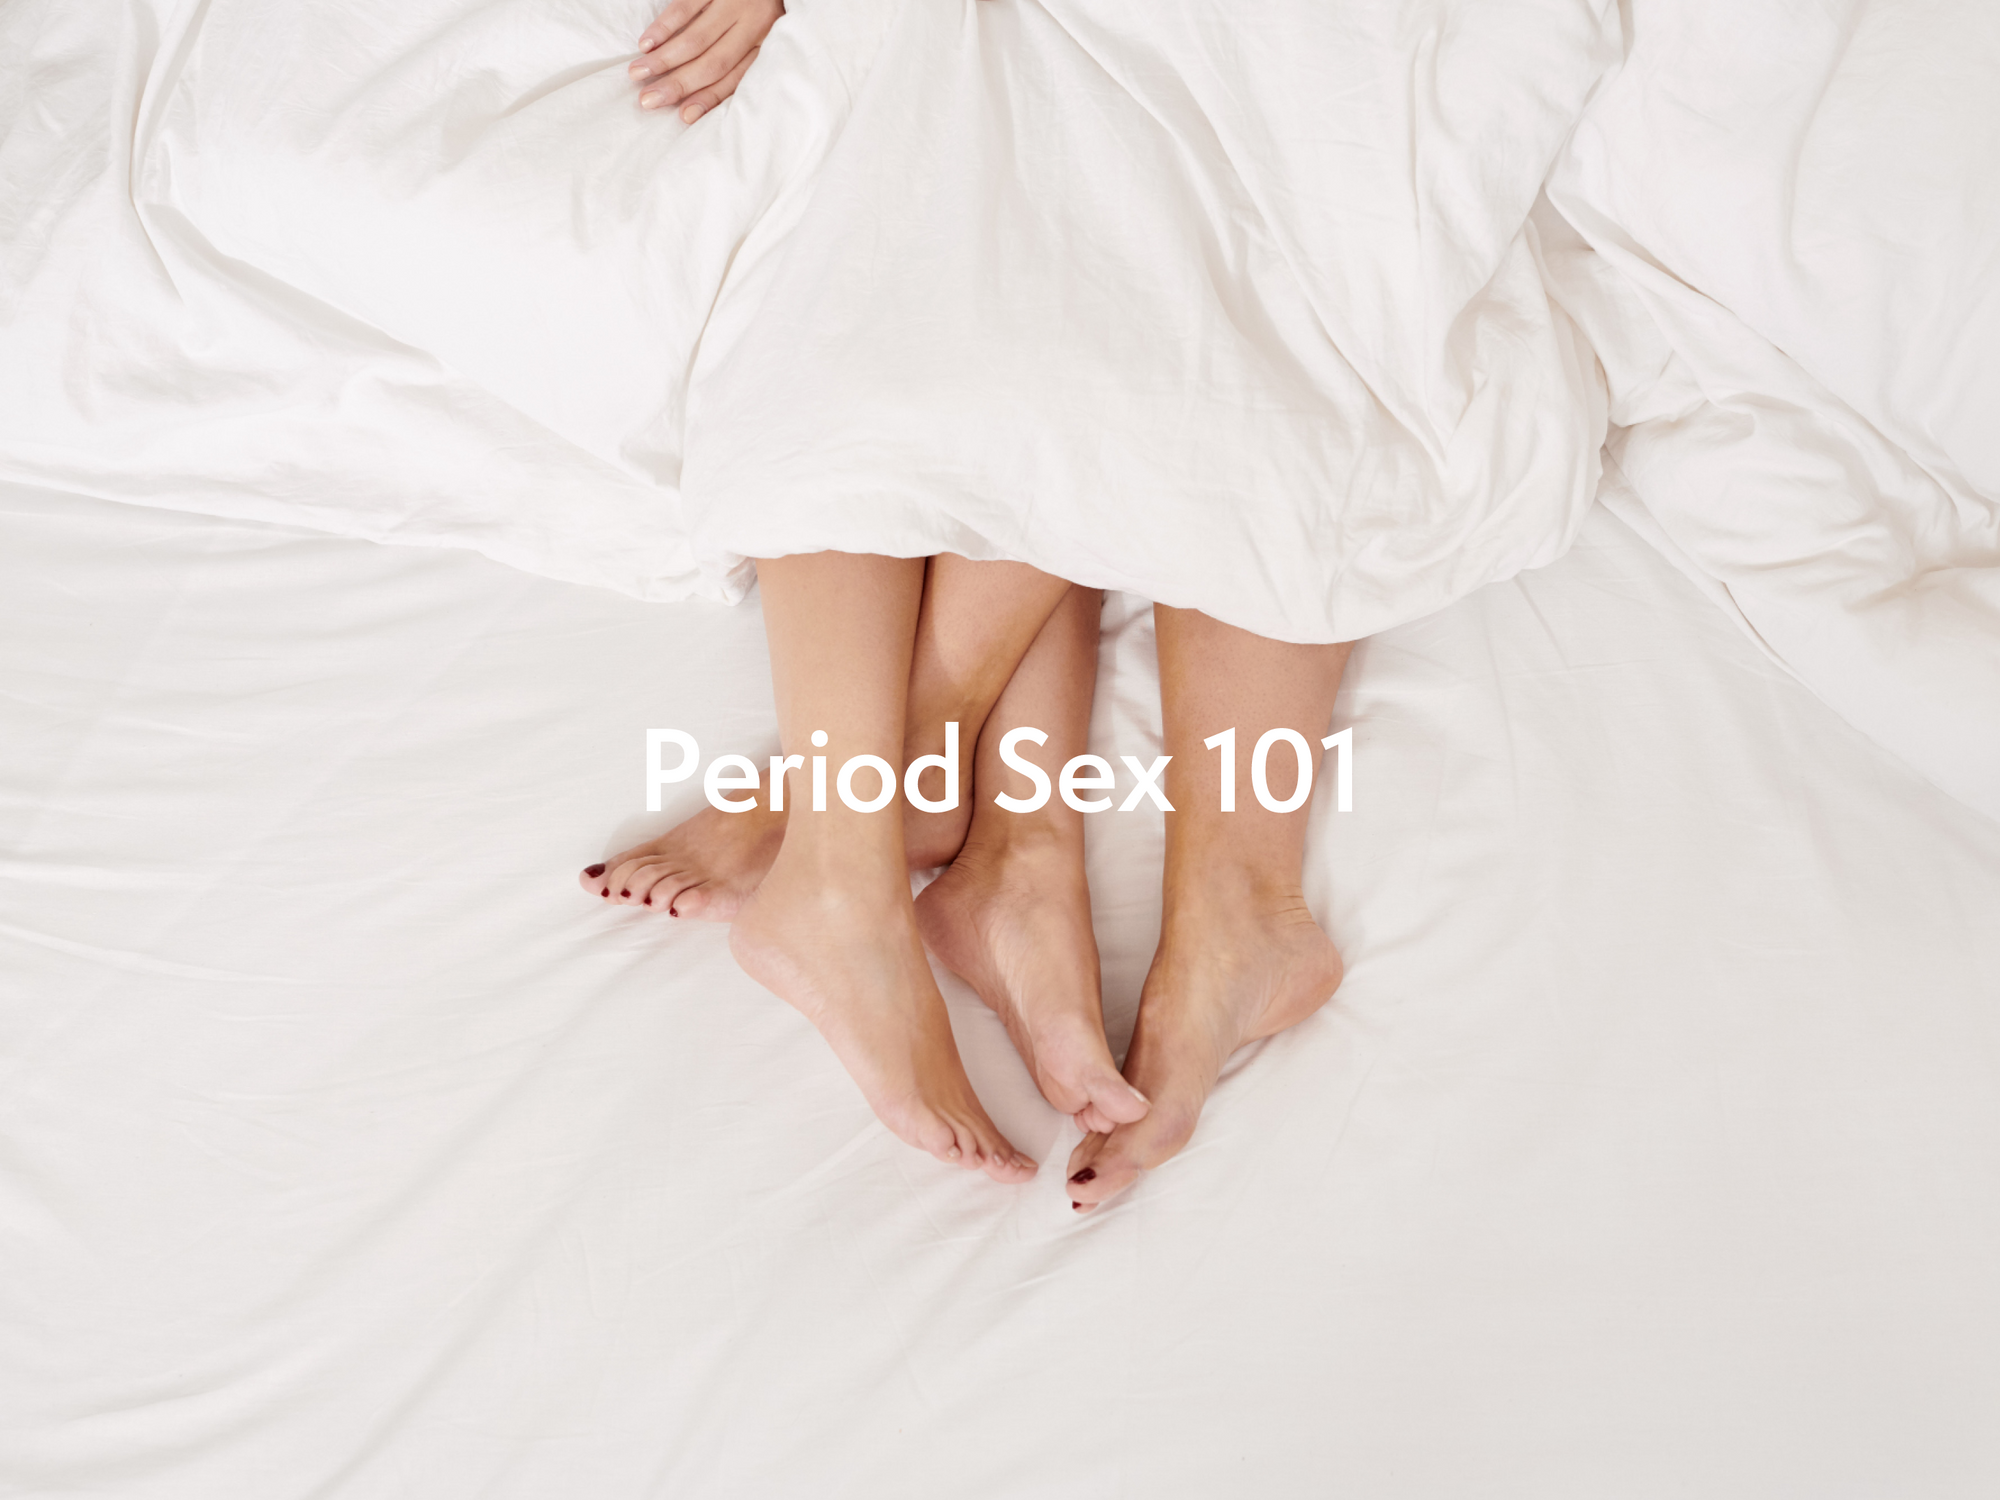 Period Sex 101